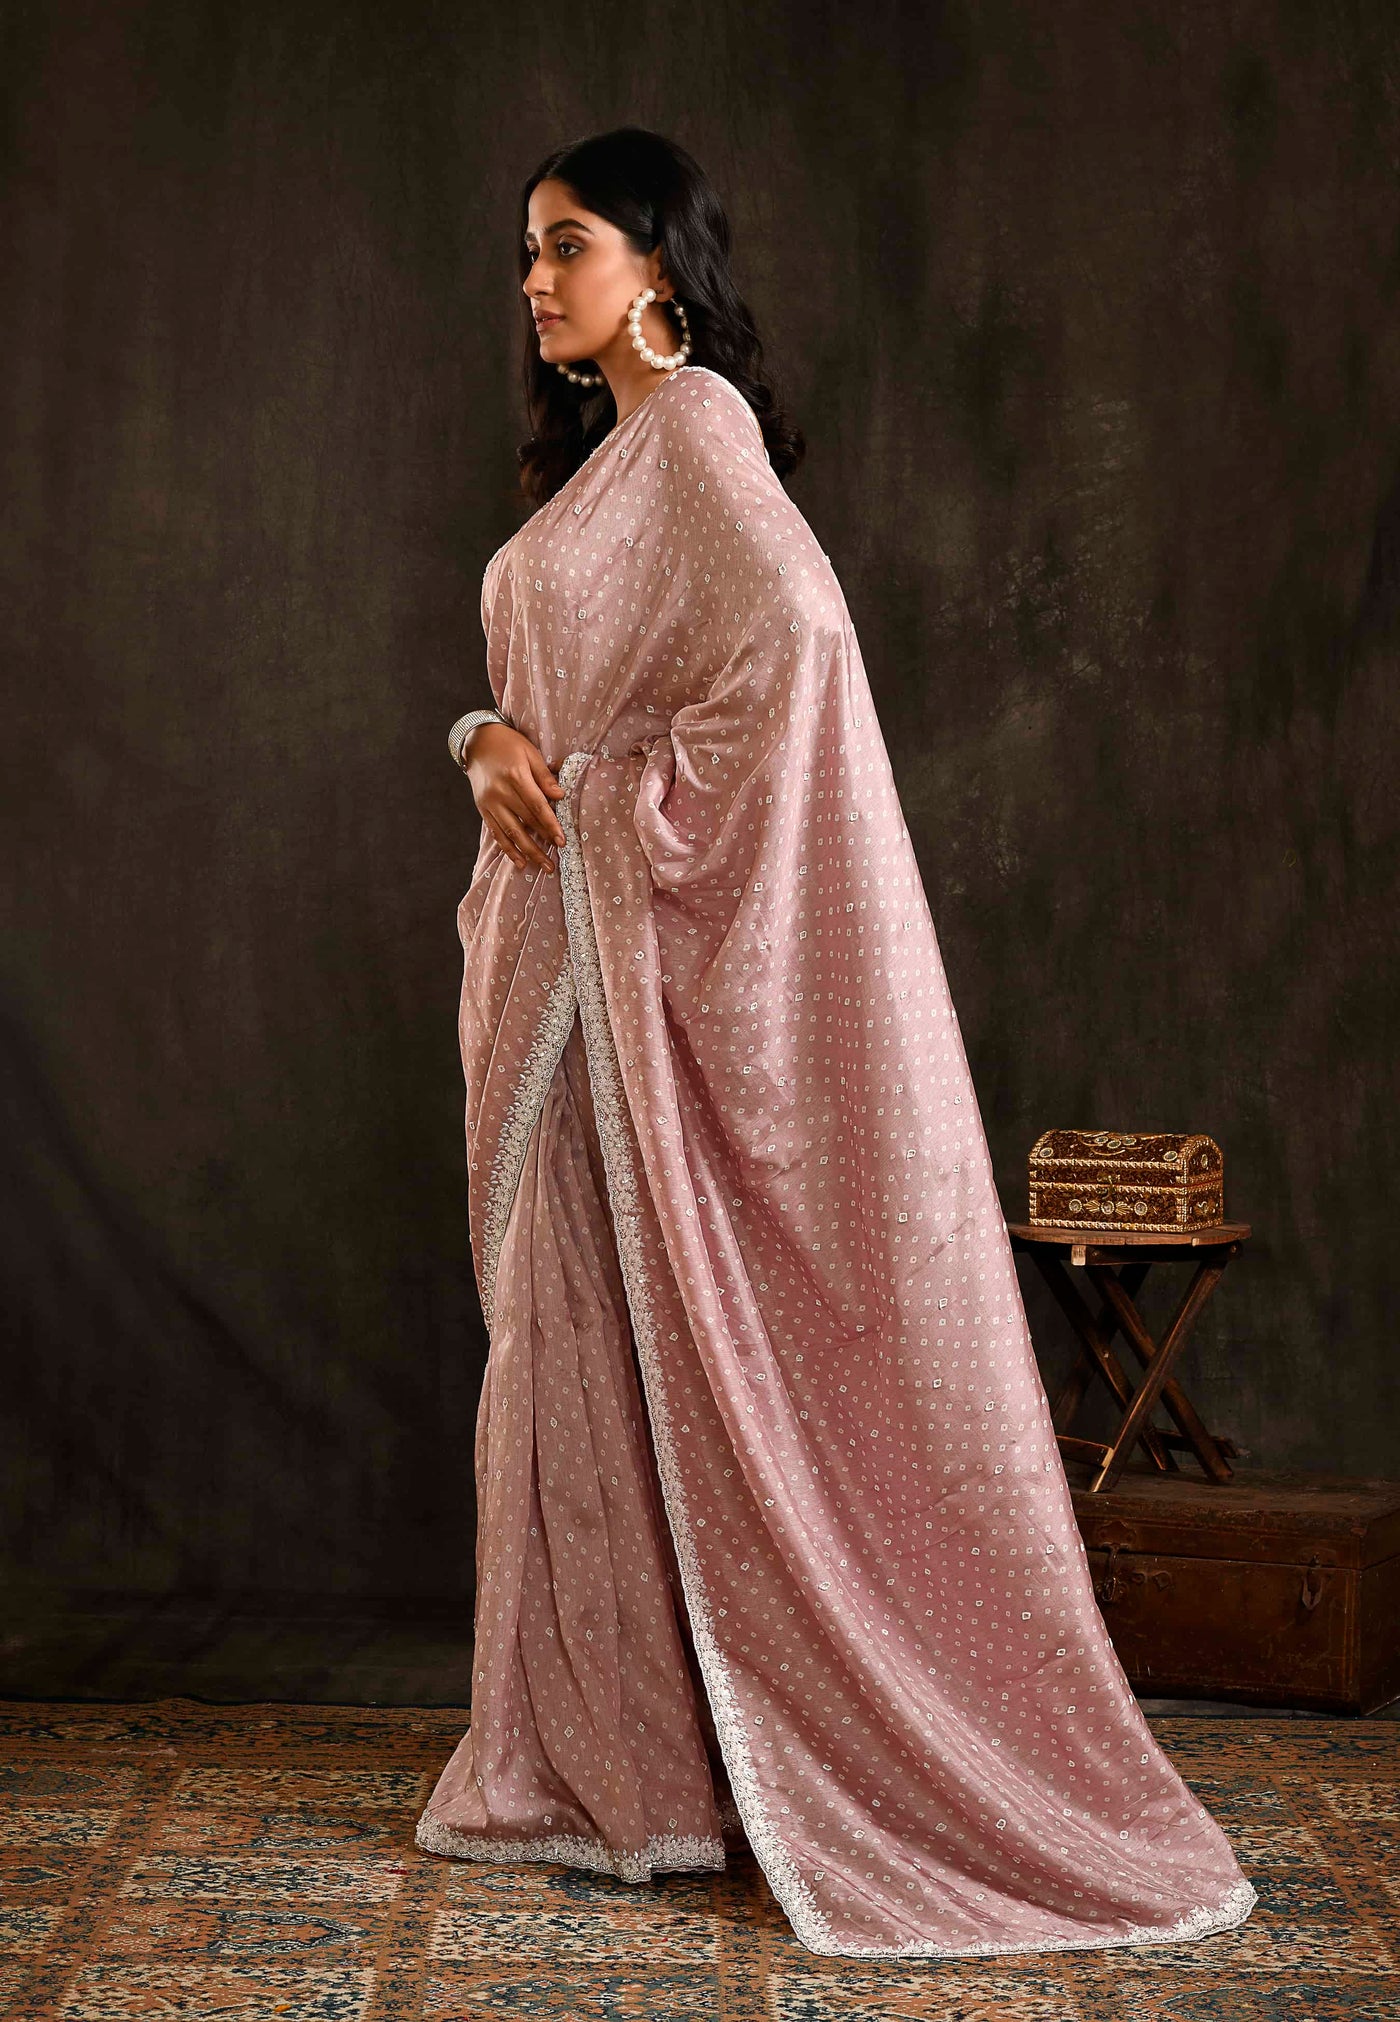 Blush Pink Bandhani Saree